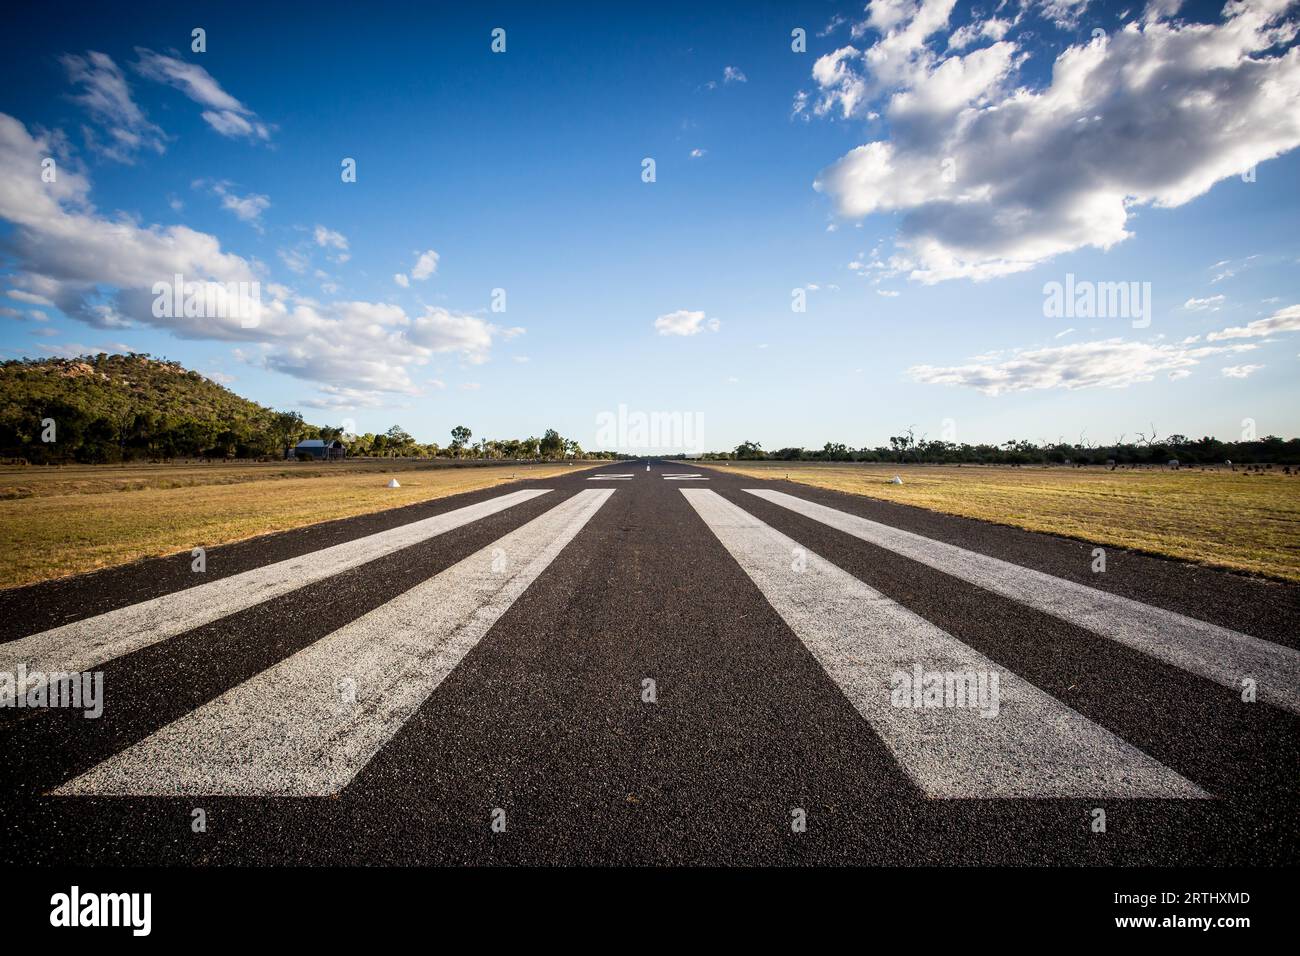 The rural Mount Surprise Airport runway in Queensland, Australia Stock Photo